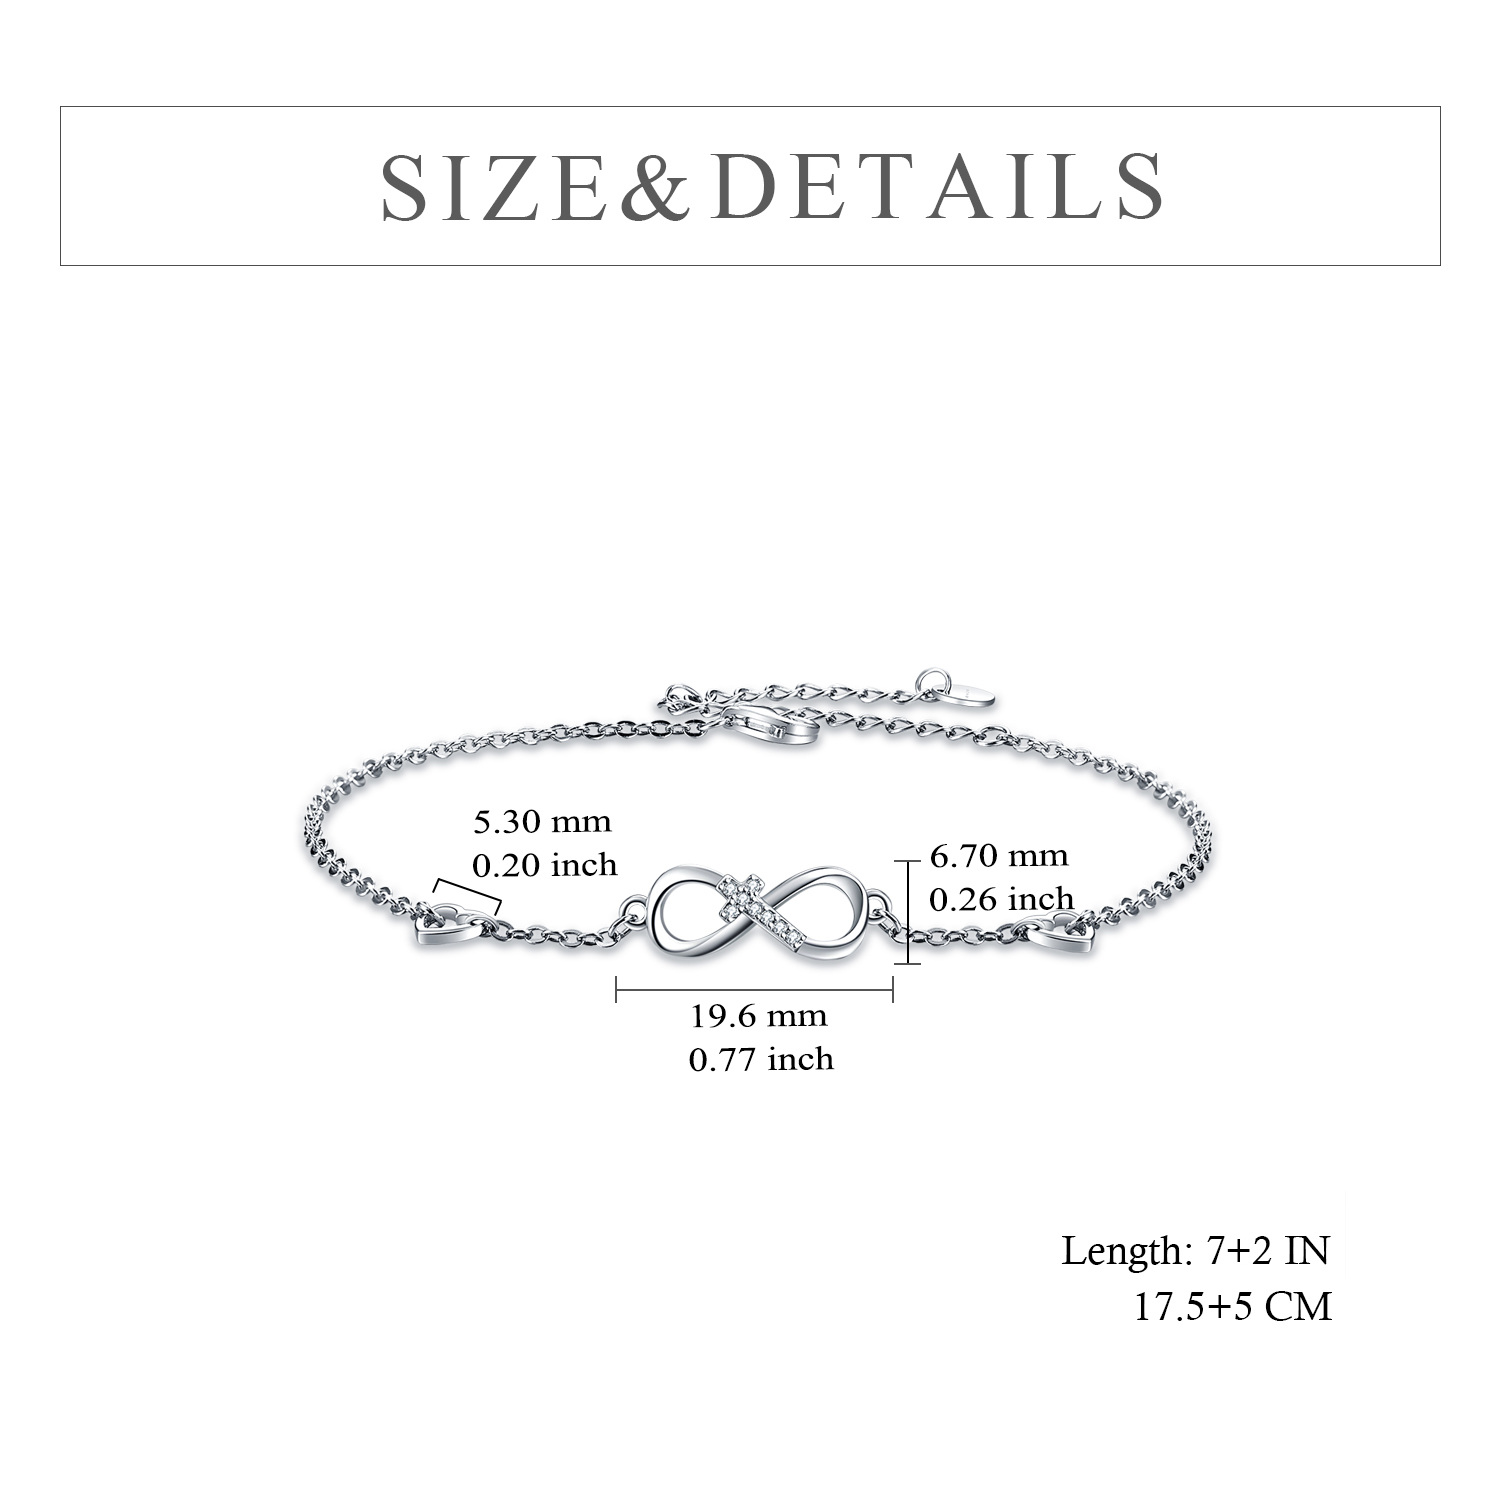 162970616642740079b - 925 Sterling Silver Cubic Zirconia Infinity Cross Heart Bracelet For Women Girls Gifts